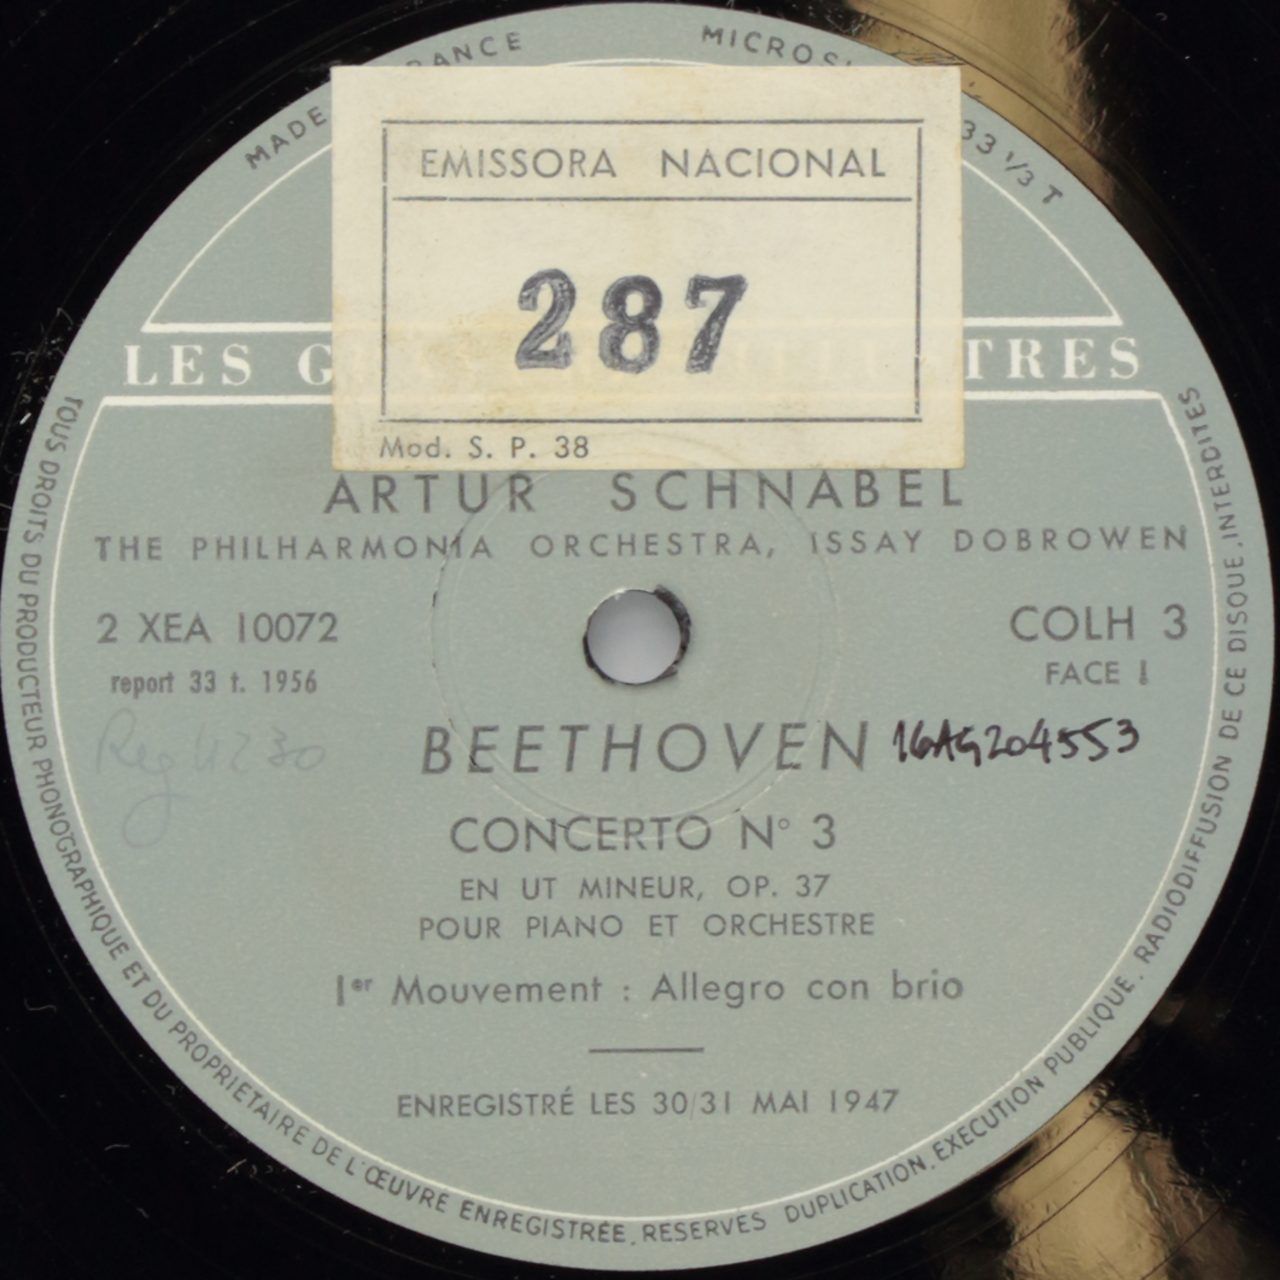 Beethoven: Concerto No. 3 pour Piano et Orchestre